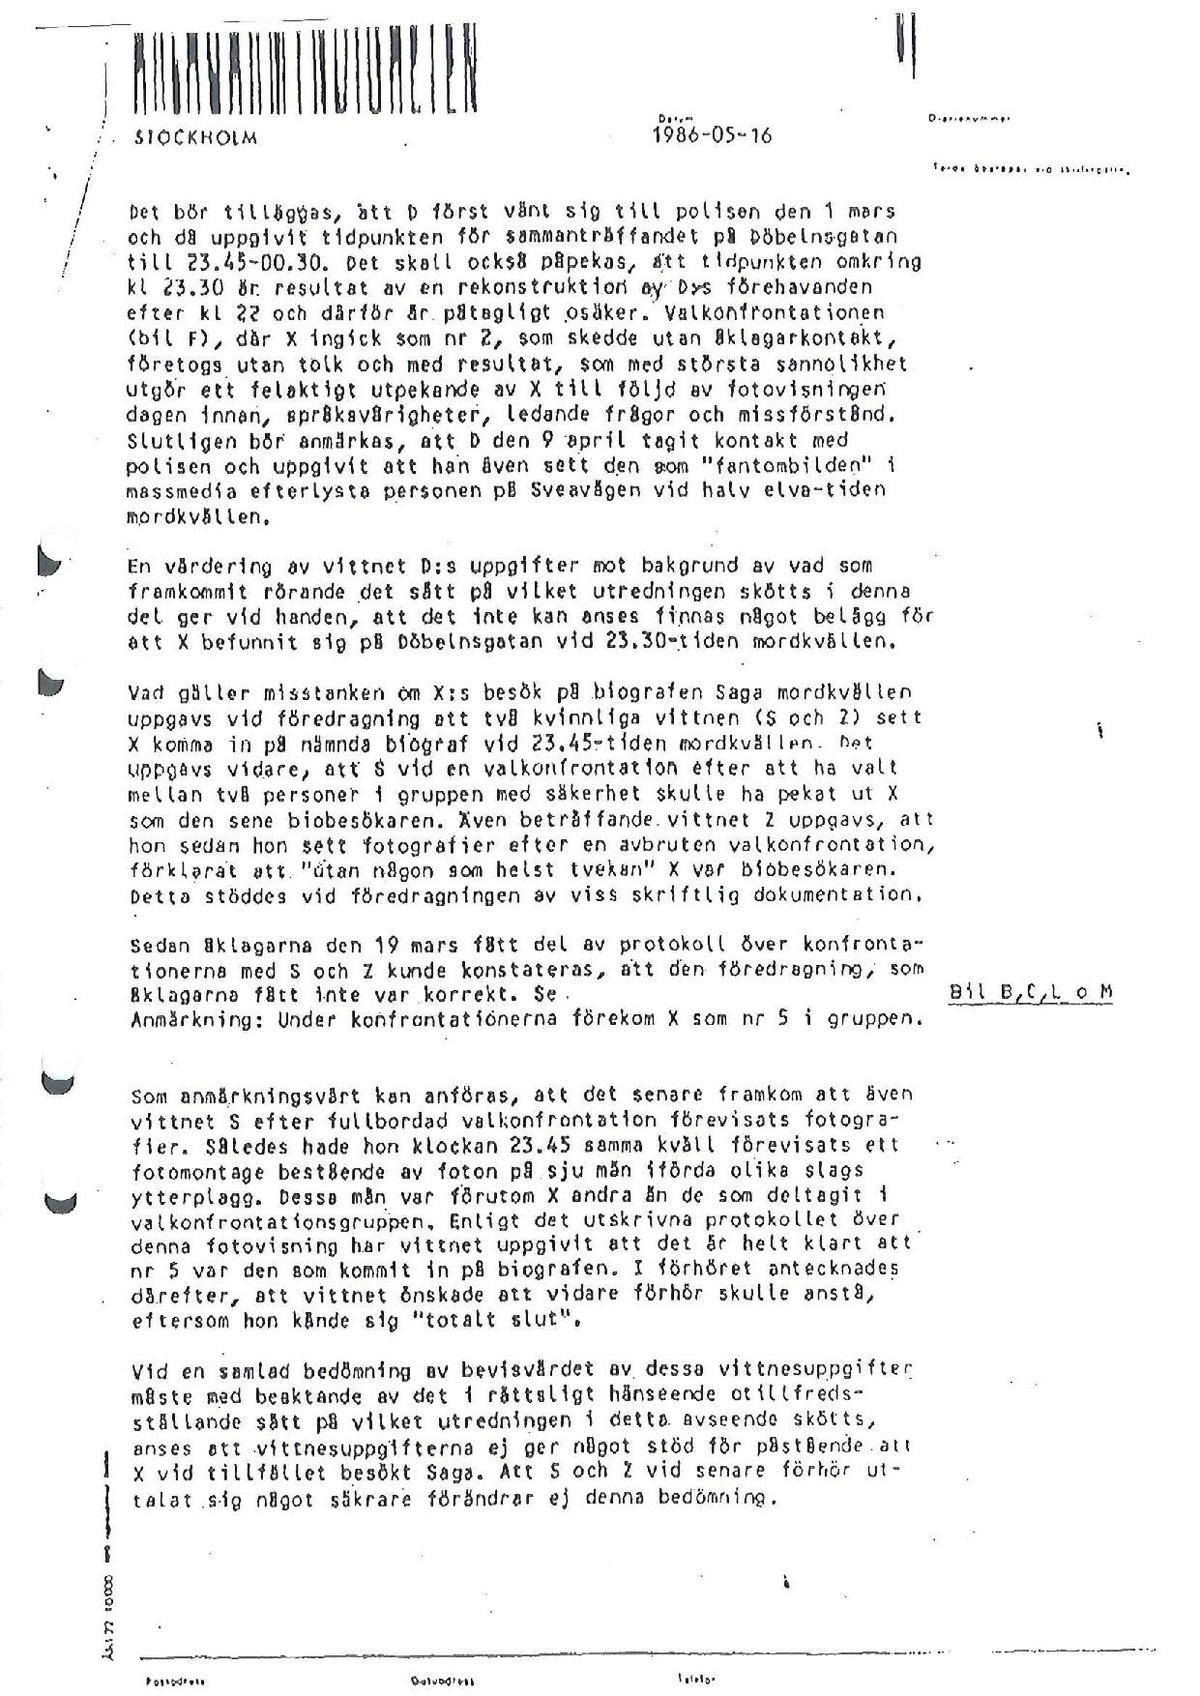 Åkl-1986-05-16 N3000-I Pressmeddelande-nedlagd-f runders kning-Victor-Gunnarsson.pdf